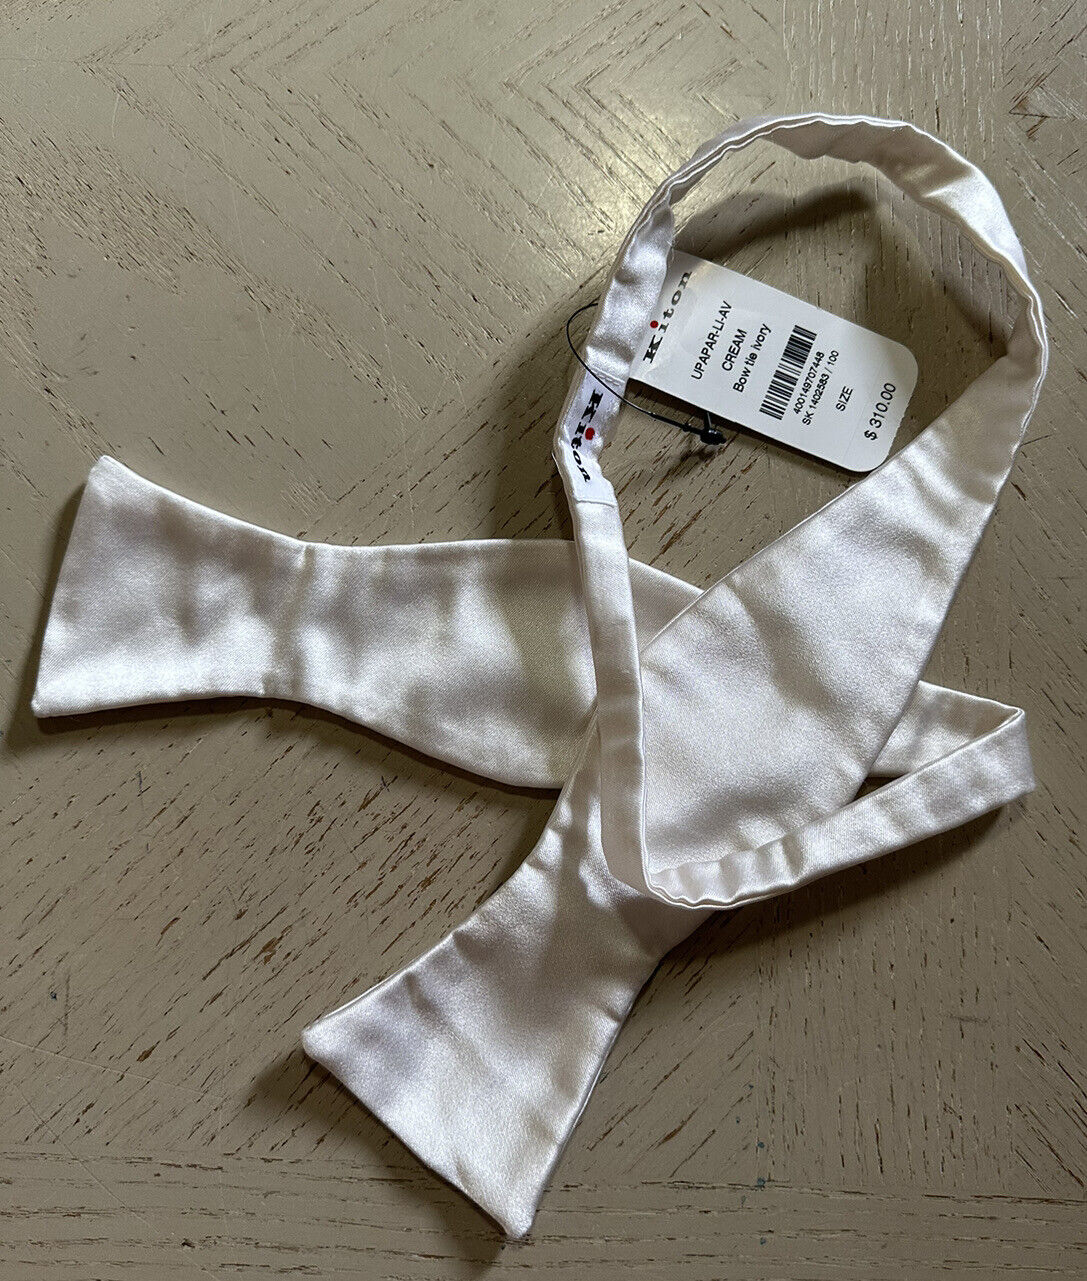 Новый шелковый галстук-бабочка Kiton цвета слоновой кости за 310 долларов в Италии.